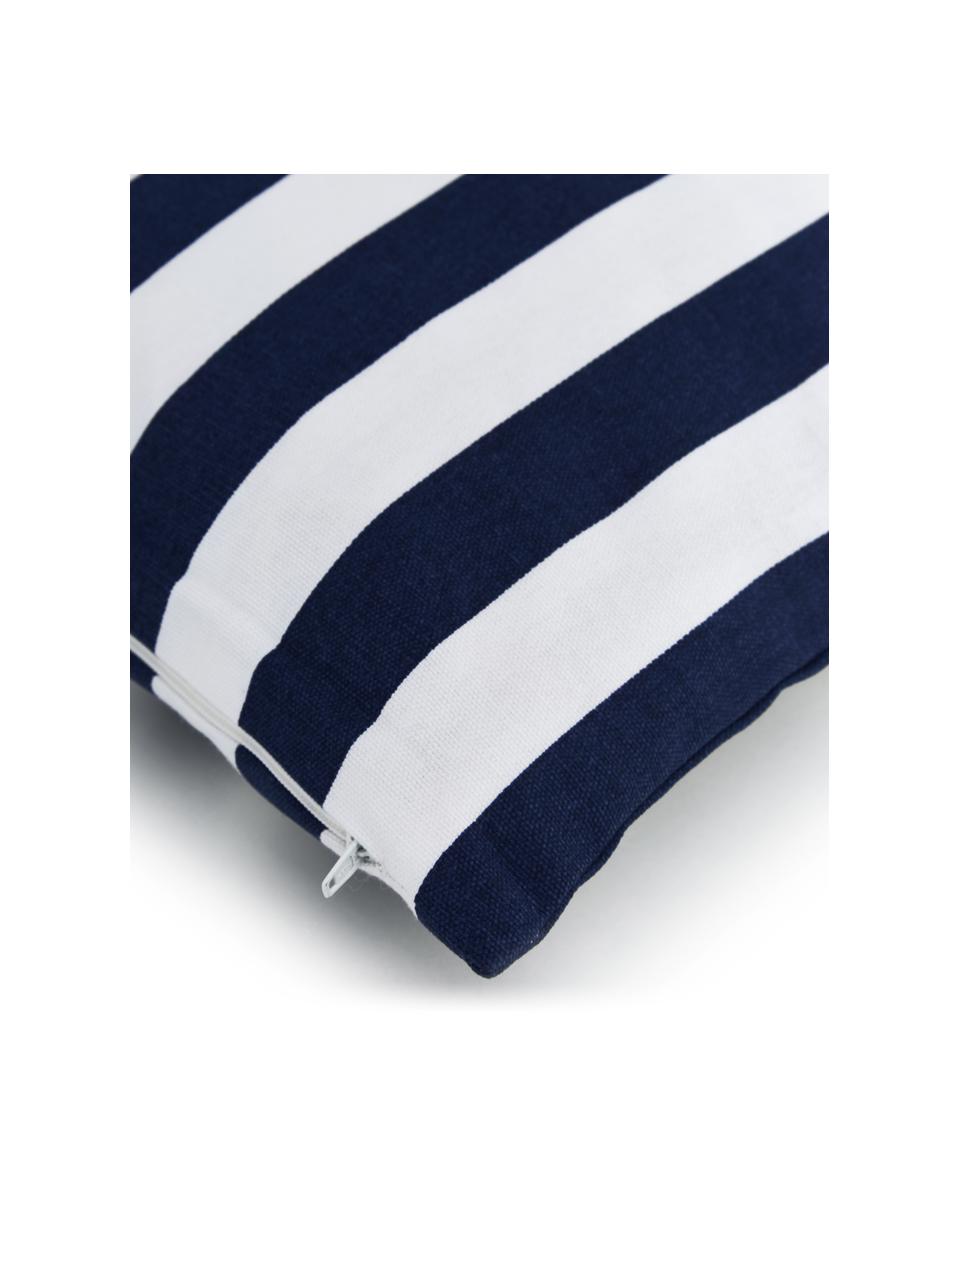 Federa arredo a righe color blu scuro/bianco Timon, 100% cotone, Blu, Larg. 50 x Lung. 50 cm